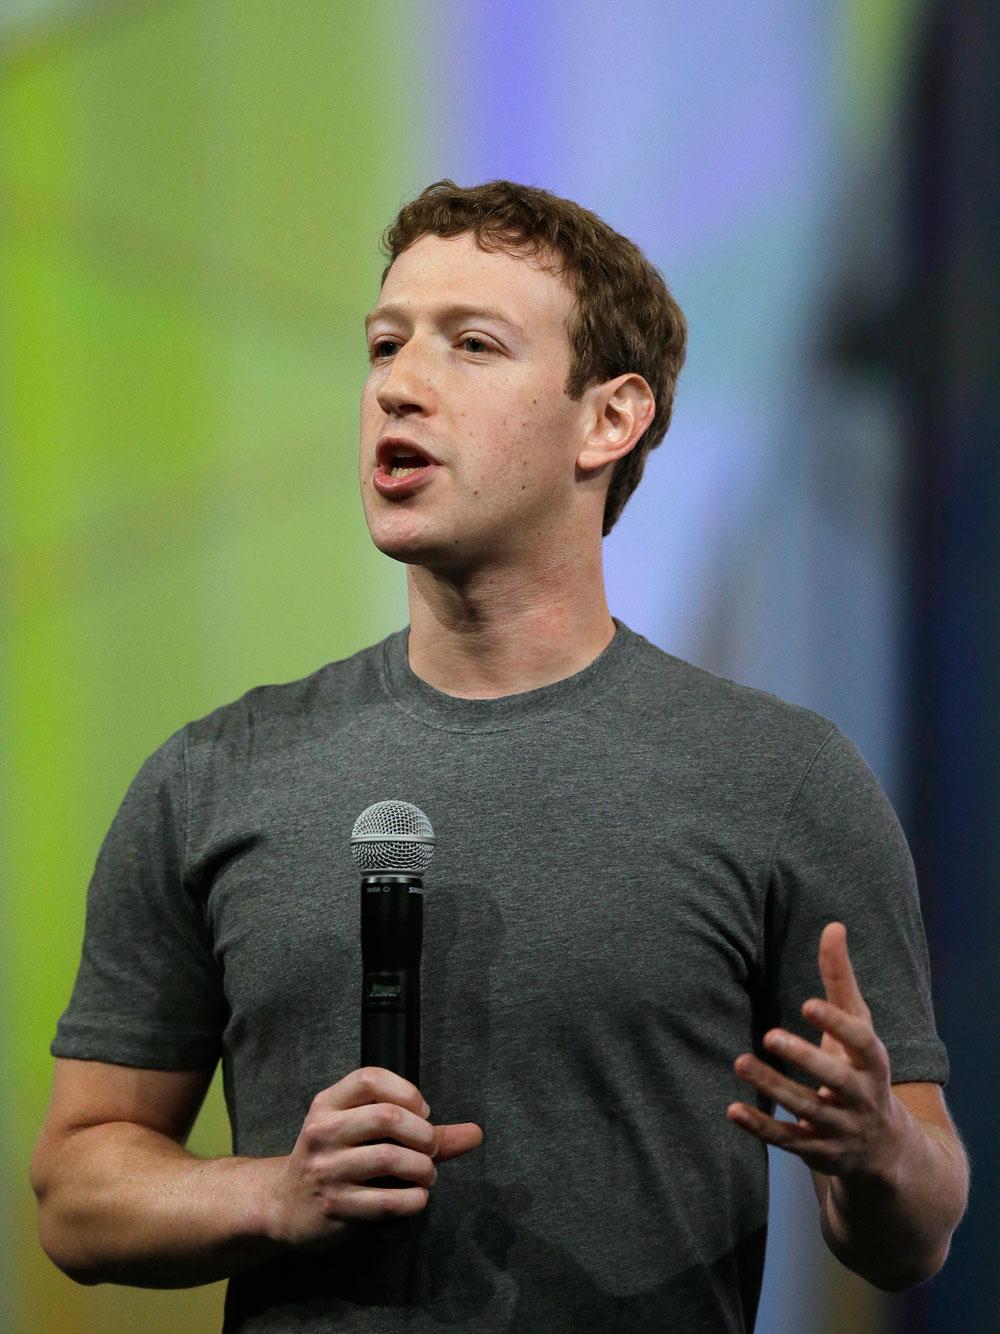 Mark Zuckerberg med den klassiska gråa tröjan på sig vid ett tillfälle 30 april 2014.